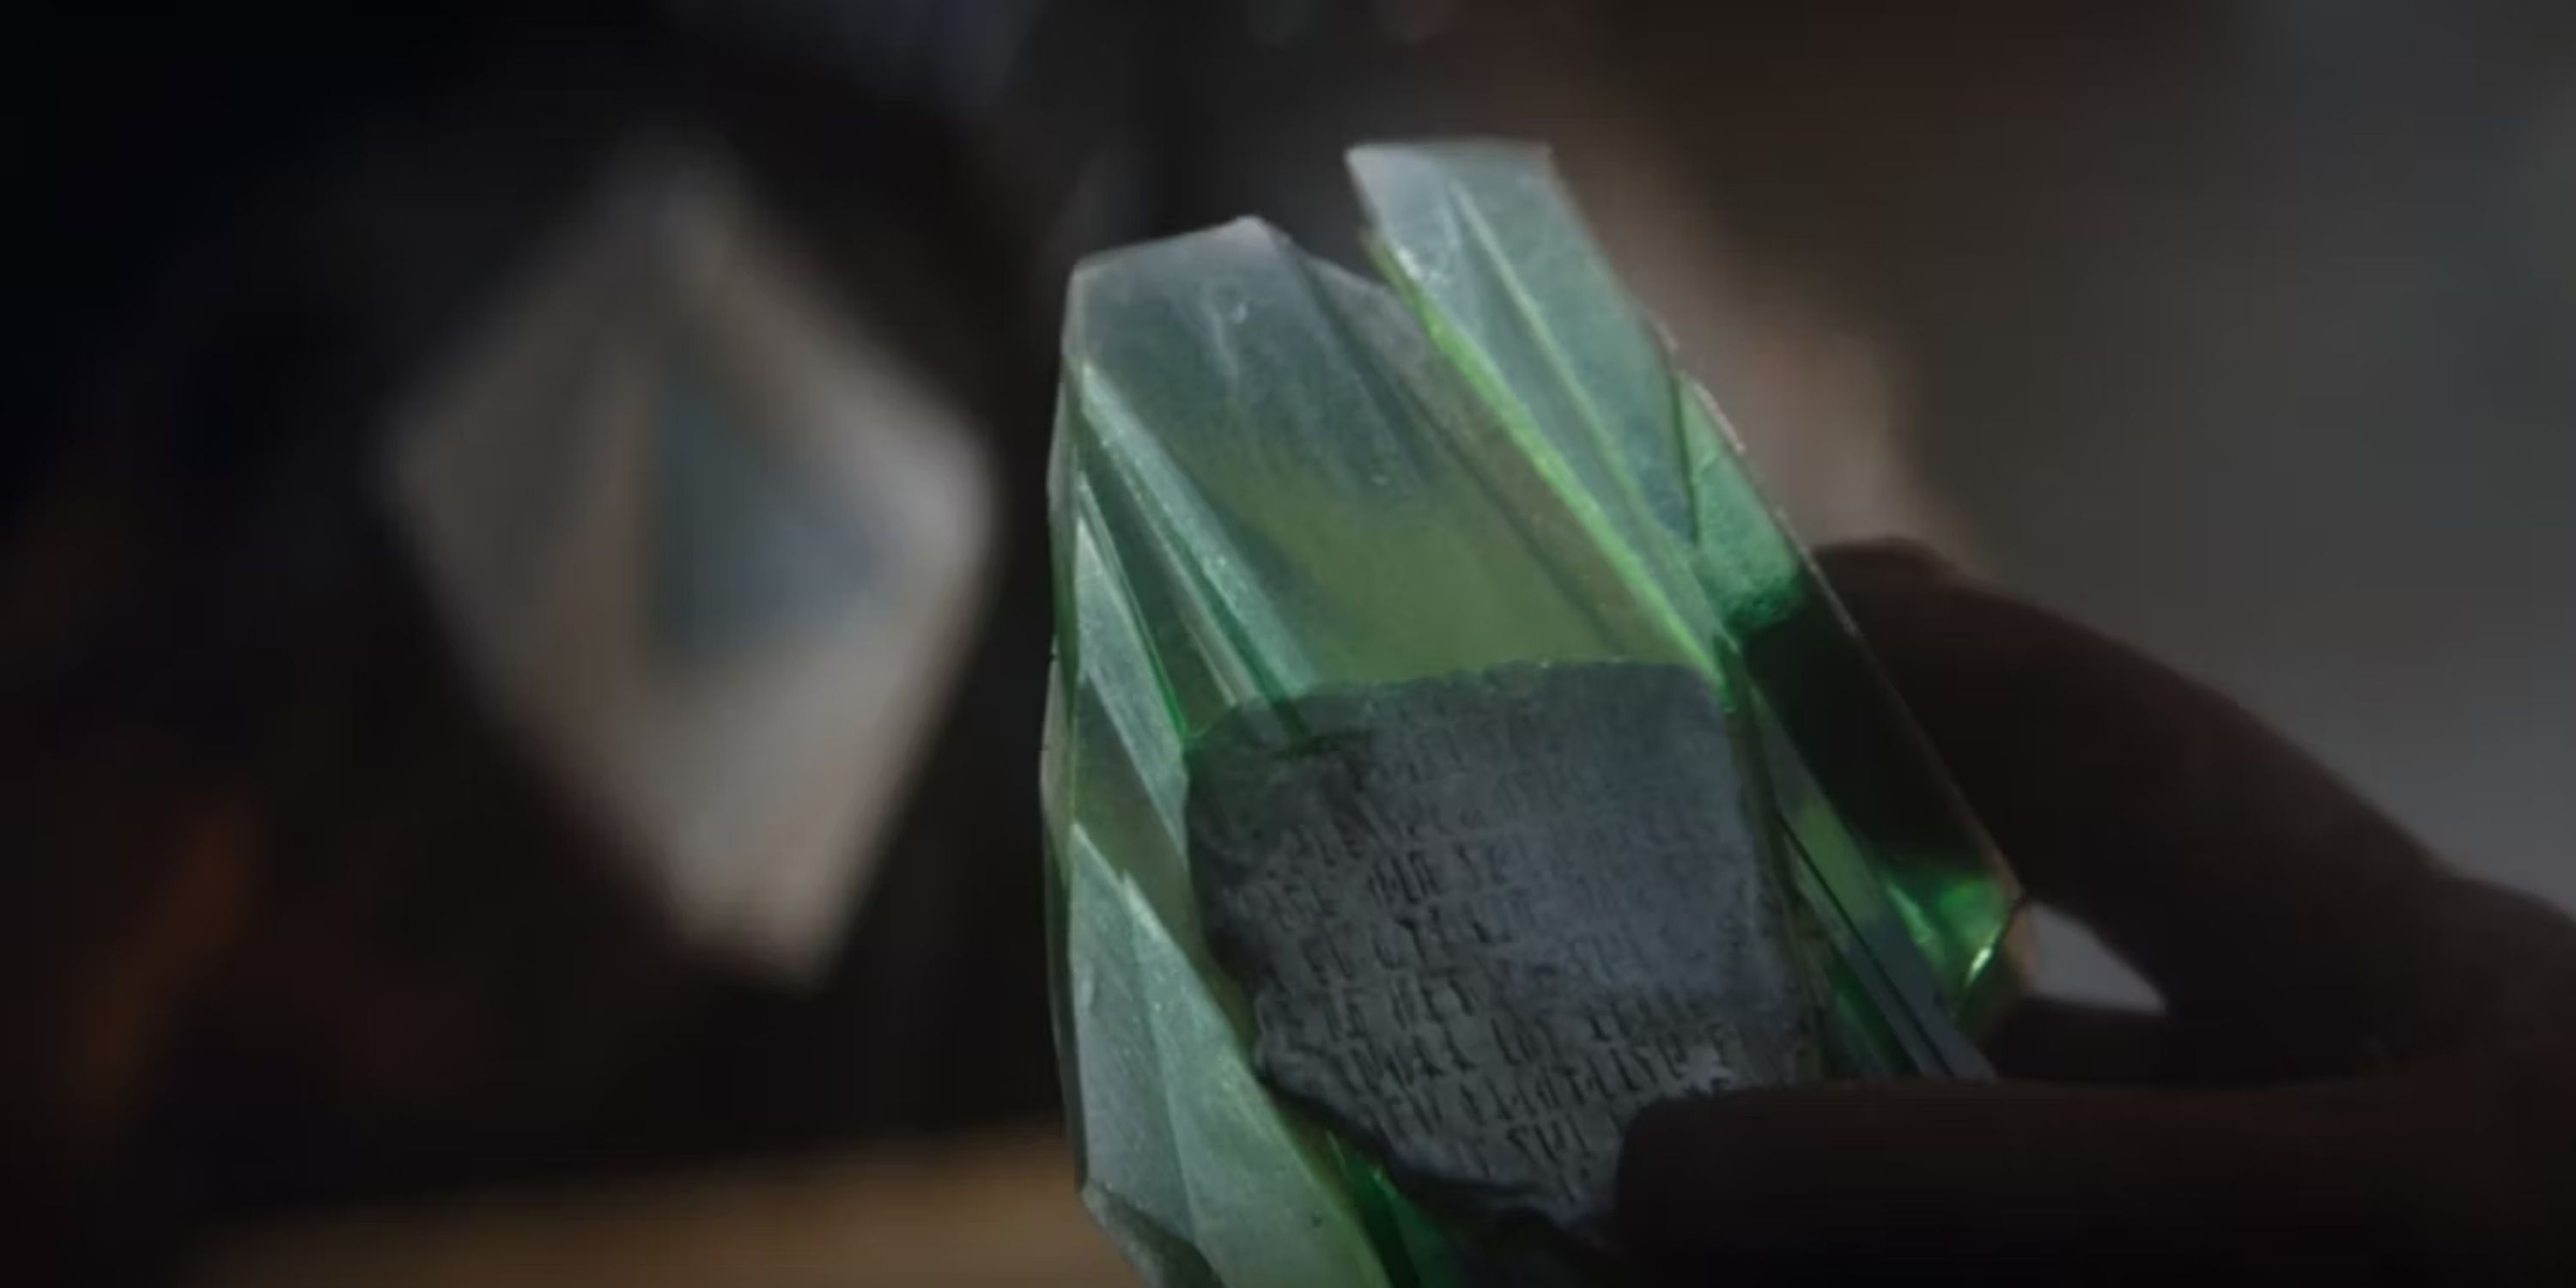 mandalorian text on a green crystal